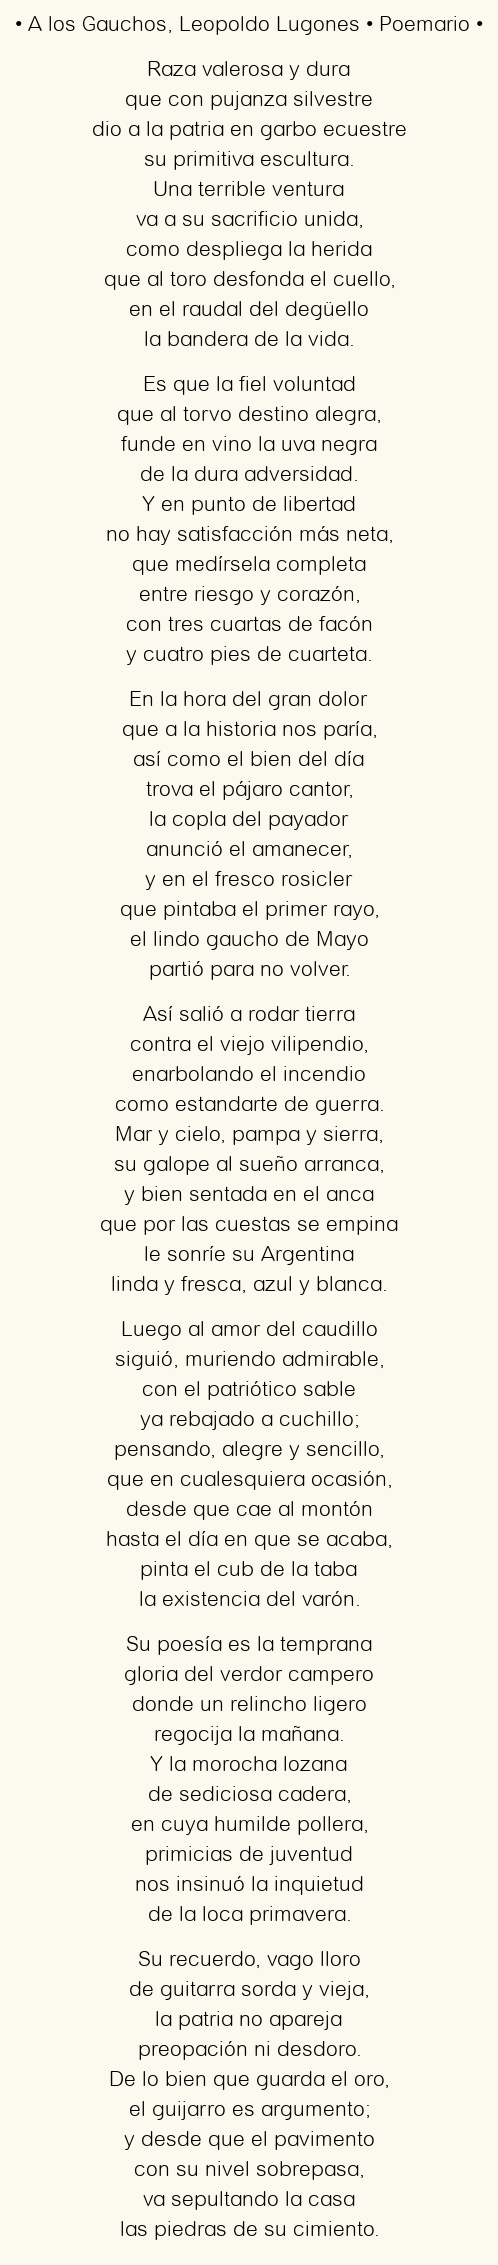 Imagen con el poema A los Gauchos, por Leopoldo Lugones